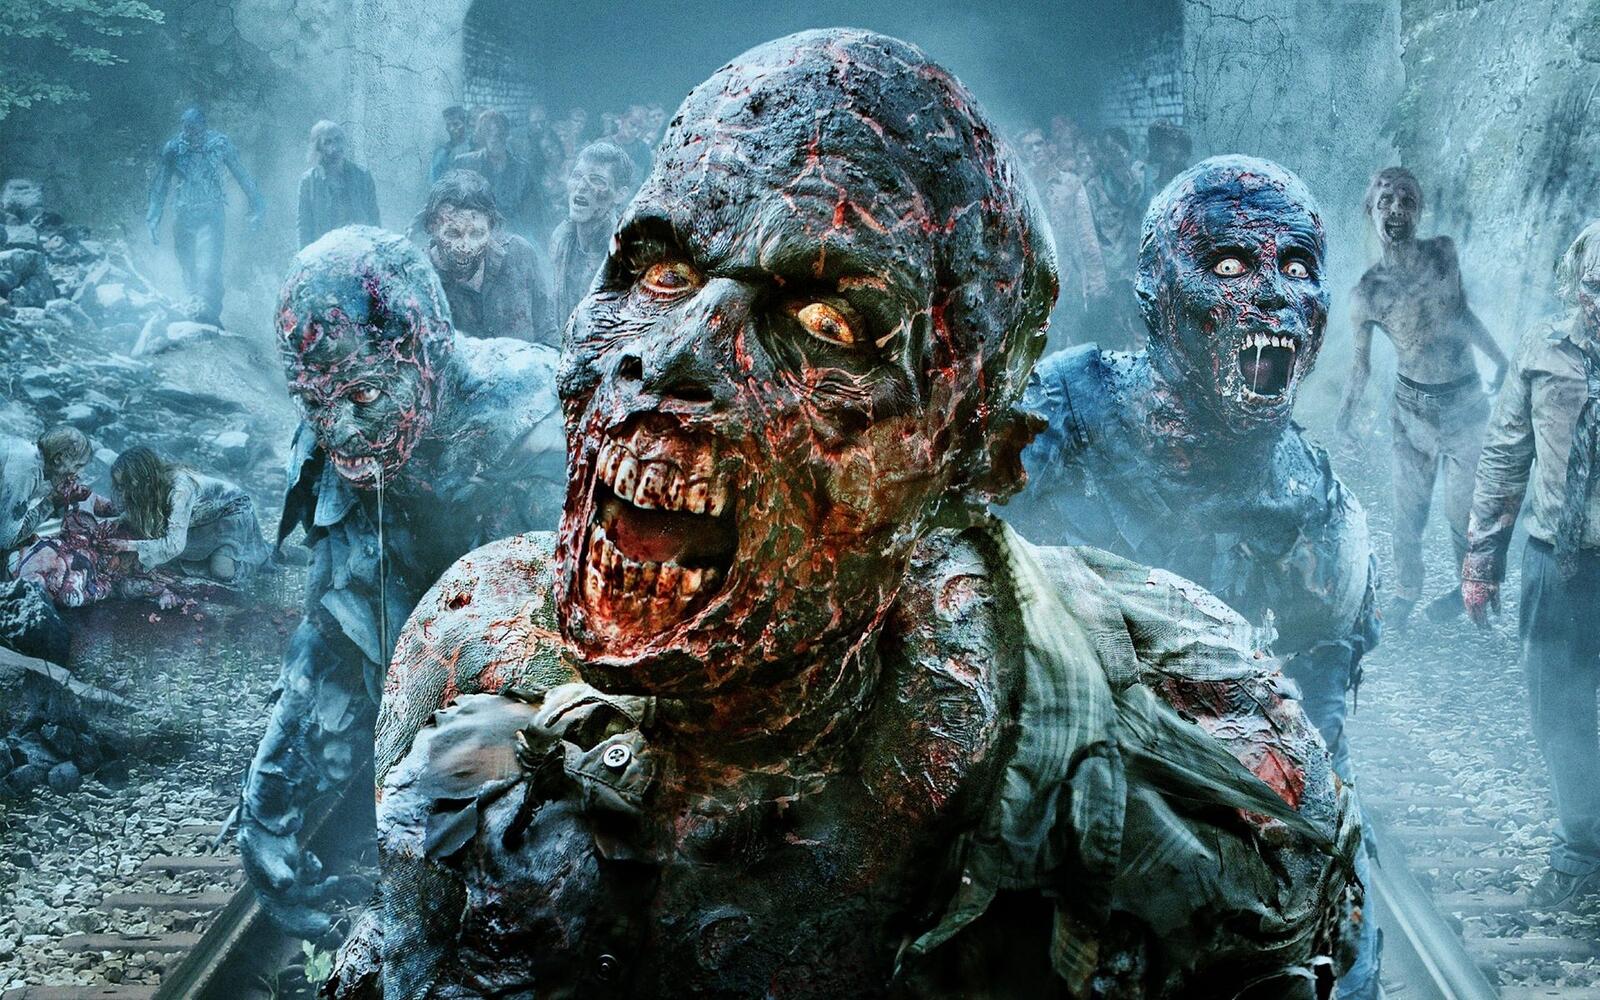 Wallpapers eerie horror zombies on the desktop